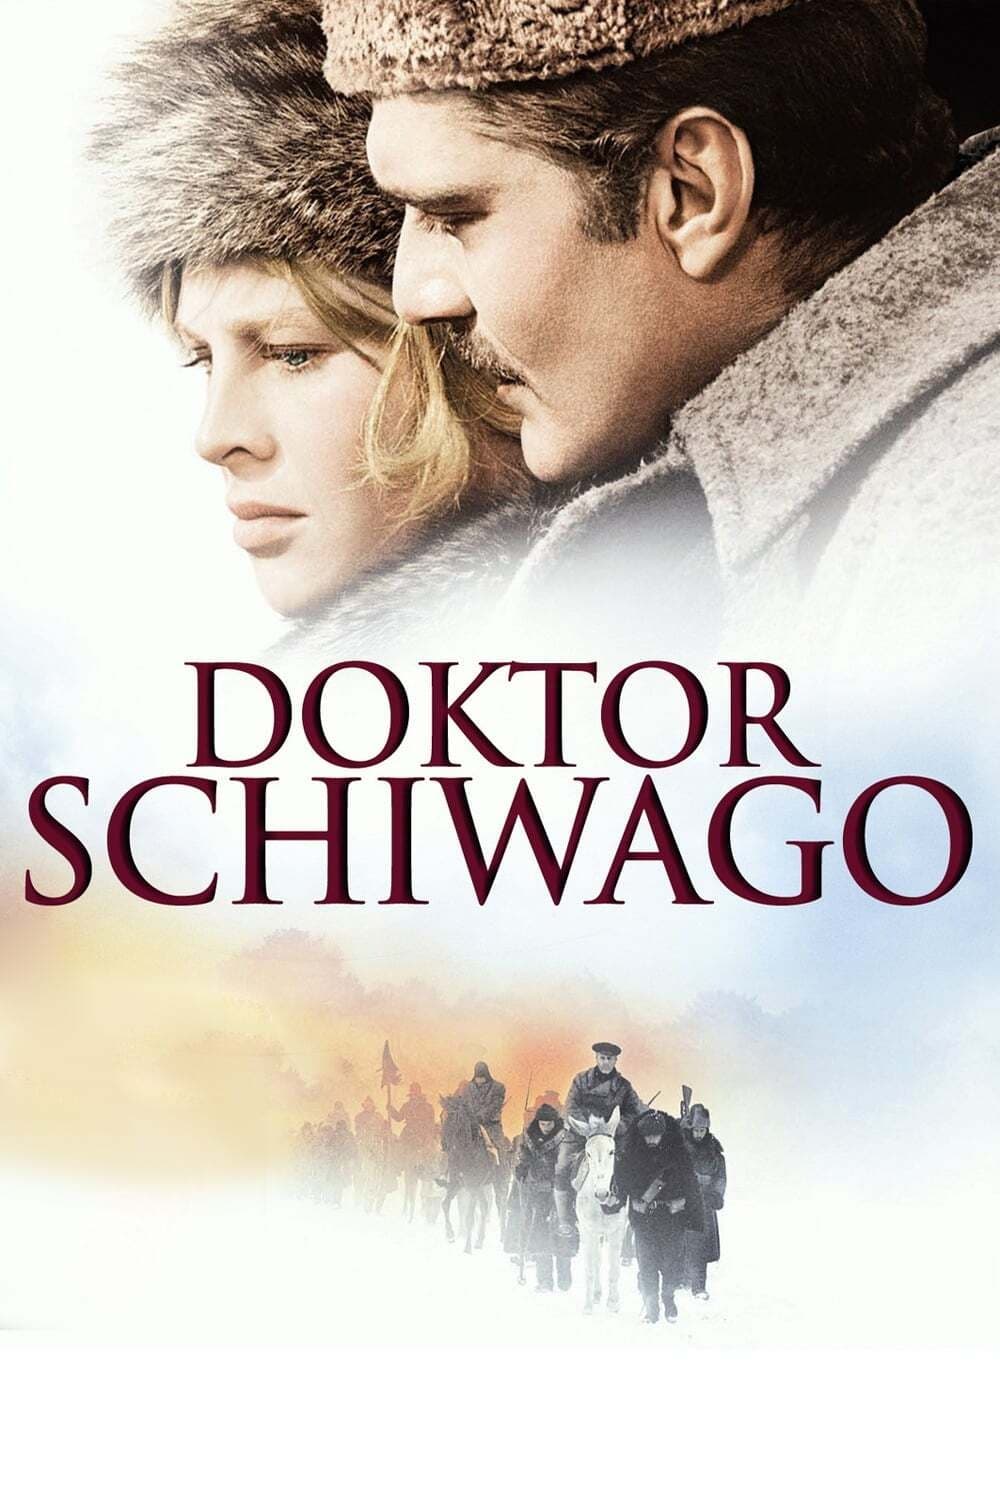 Youtube Doktor Schiwago Ganzer Film Deutsch